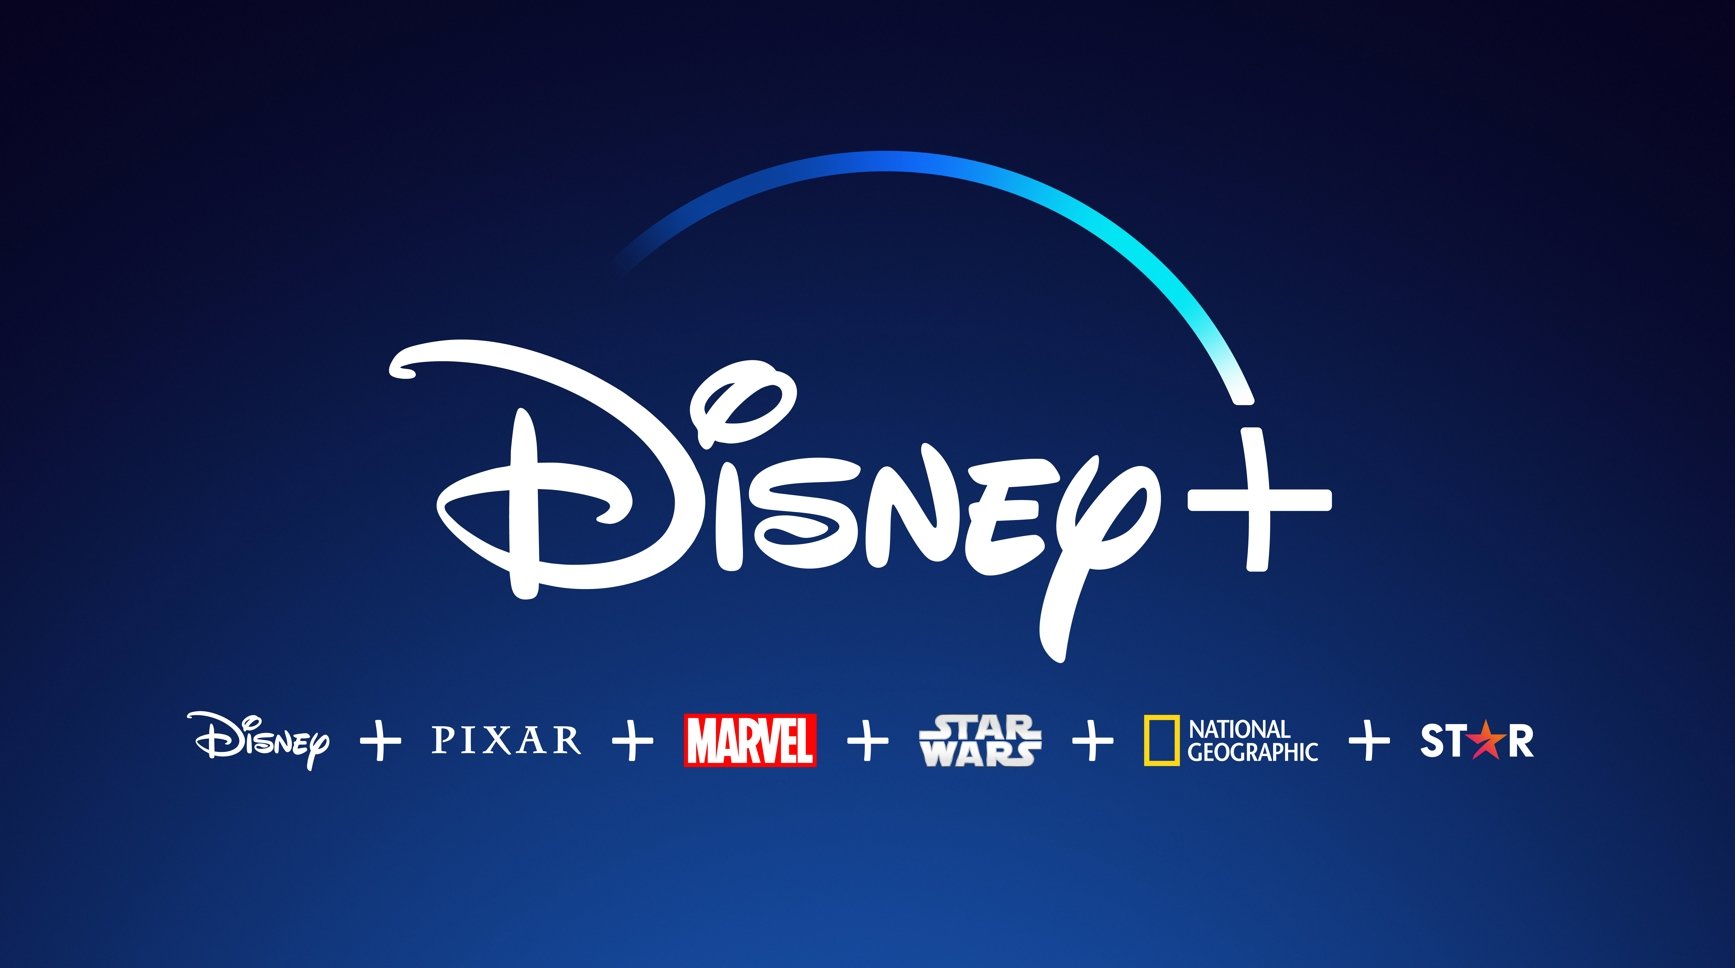 Disney plus com logo da empresa